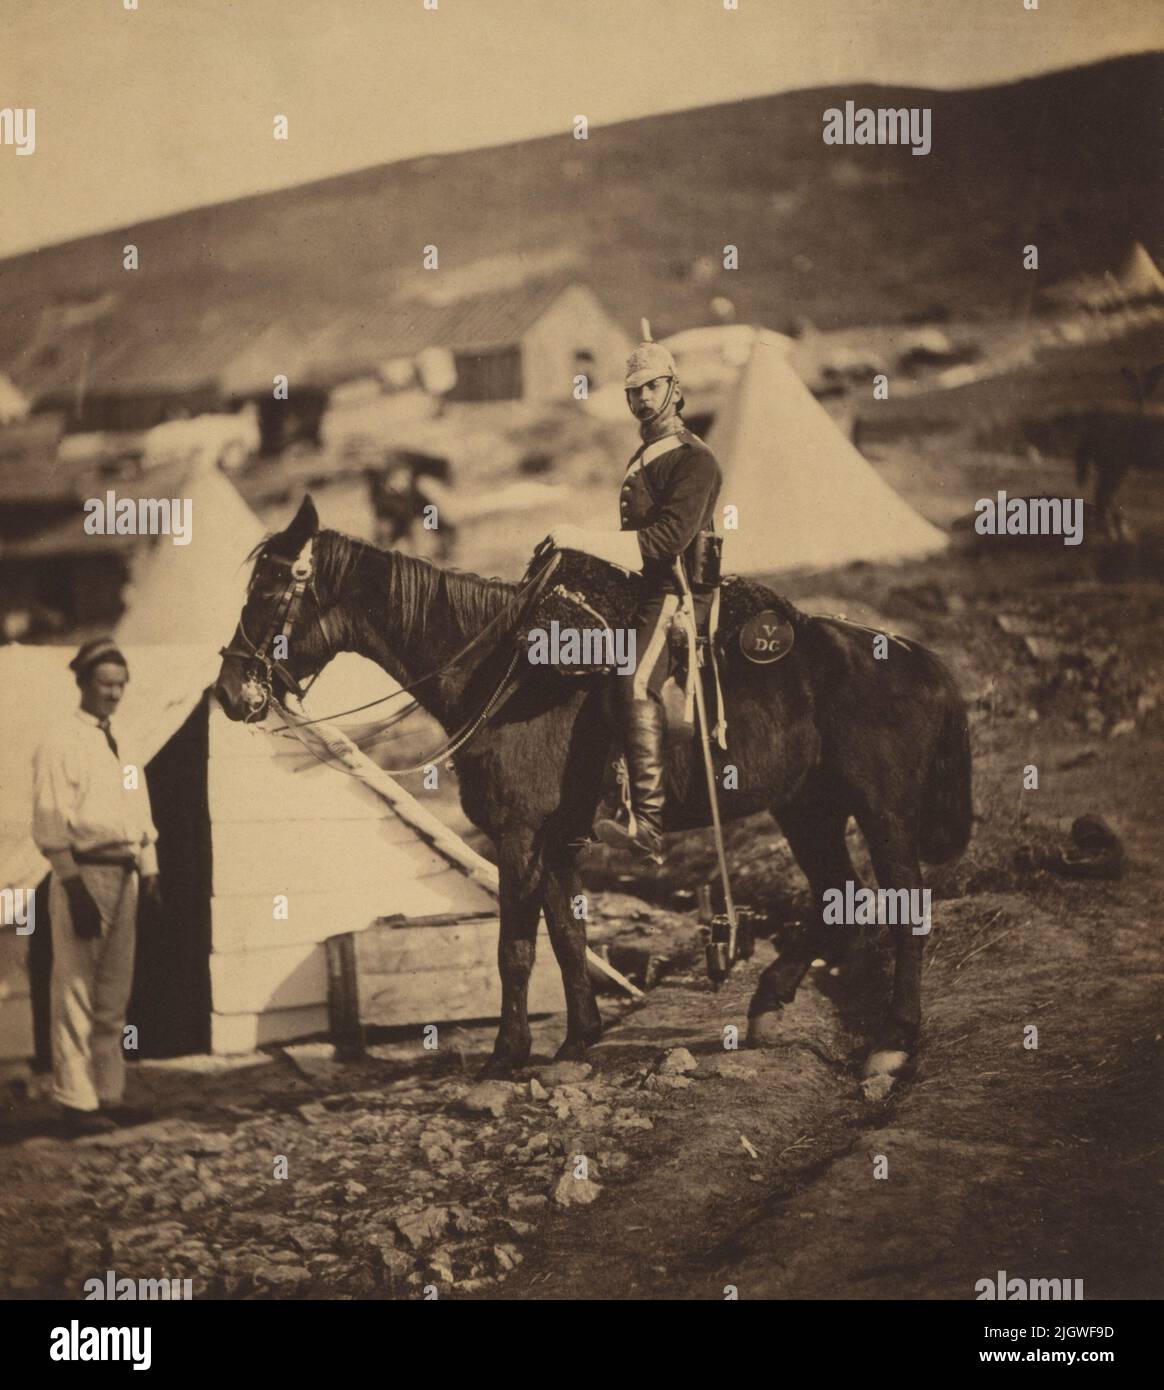 Ein Vintage-Foto um 1855 von Kapitän Bernard von den Briten , 5. Dragoon Guards zu Pferd während des Krimkrieges von 1853 bis 1856. Aufgenommen vom Fotografen Roger Fenton Stockfoto